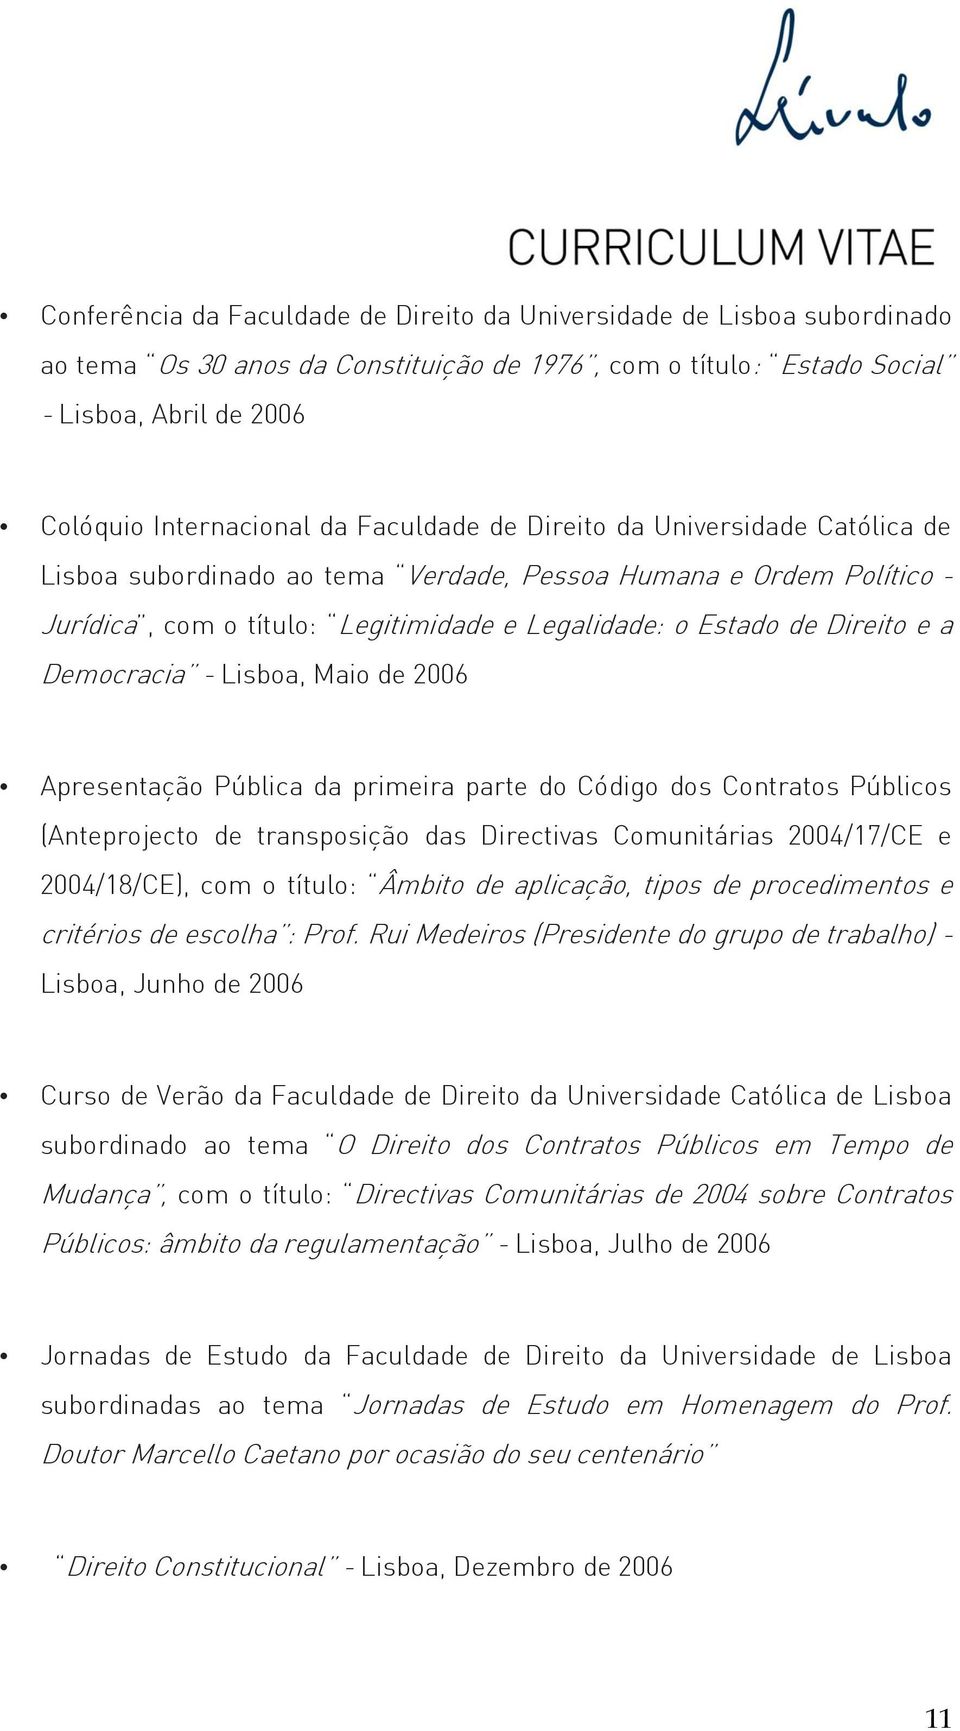 Democracia - Lisboa, Maio de 2006 Apresentação Pública da primeira parte do Código dos Contratos Públicos (Anteprojecto de transposição das Directivas Comunitárias 2004/17/CE e 2004/18/CE), com o